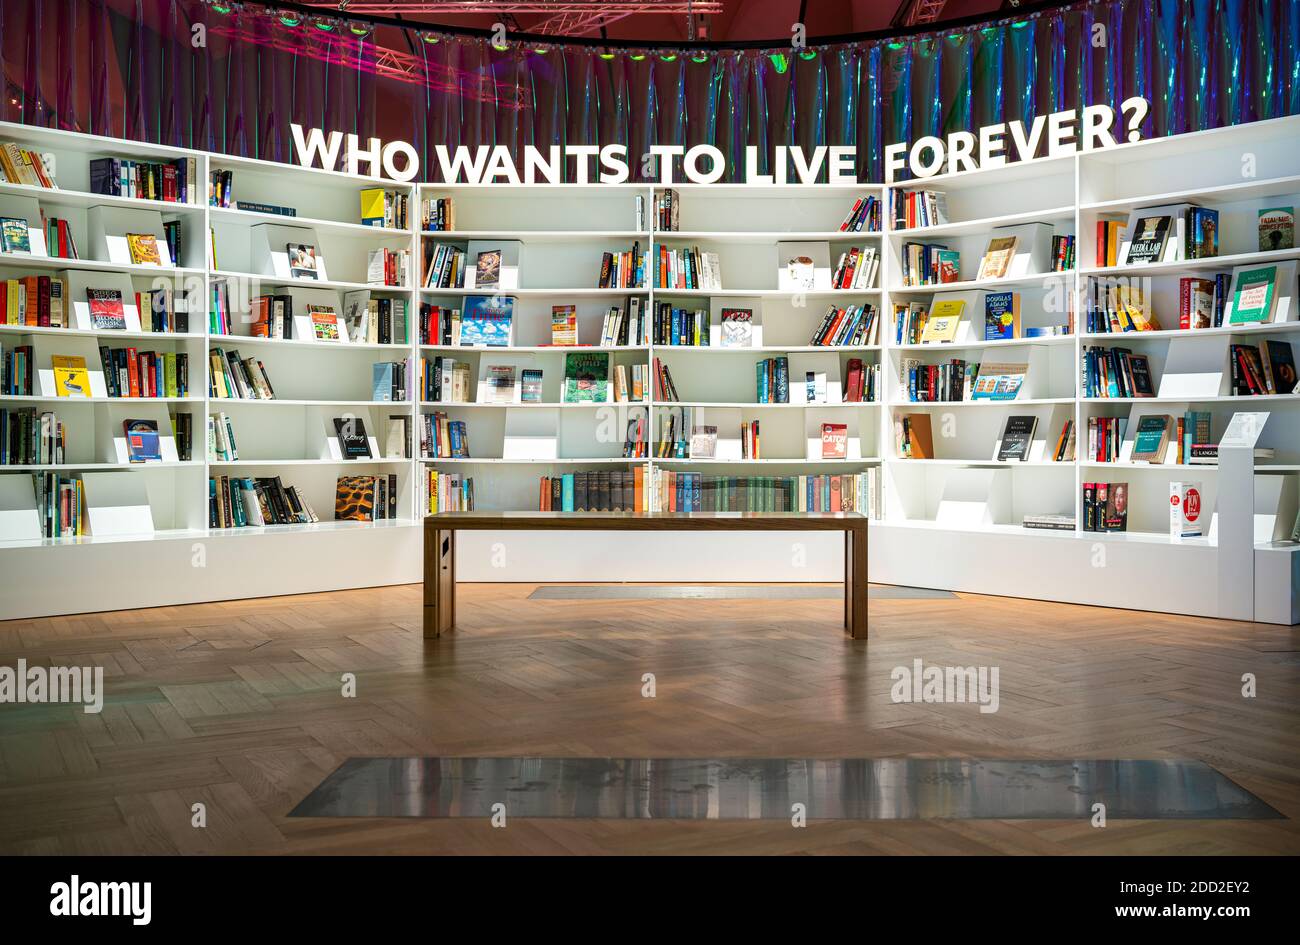 Chi vuole vivere per sempre? Una libreria per ricostruire la civiltà. Il futuro inizia qui lo spettacolo al Victoria and Albert Museum di Londra Foto Stock